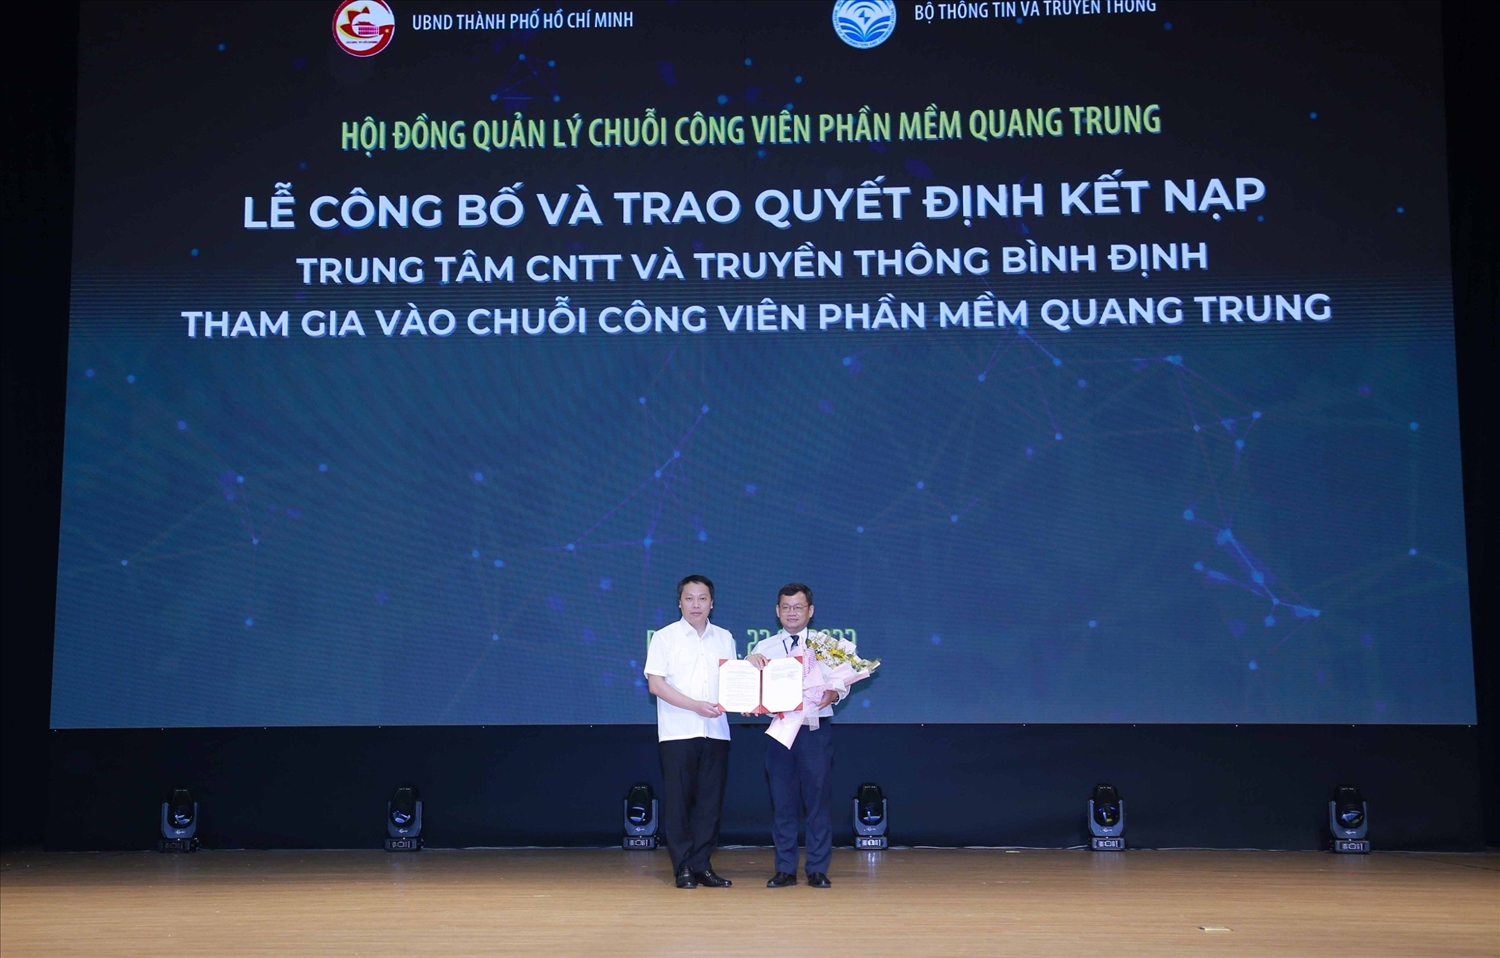 Trao Quyết định của Thủ tướng Chính phủ kết nạp Trung tâm CNTT-TT Bình Định là thành viên Chuỗi Công viên phần mềm Quang Trung